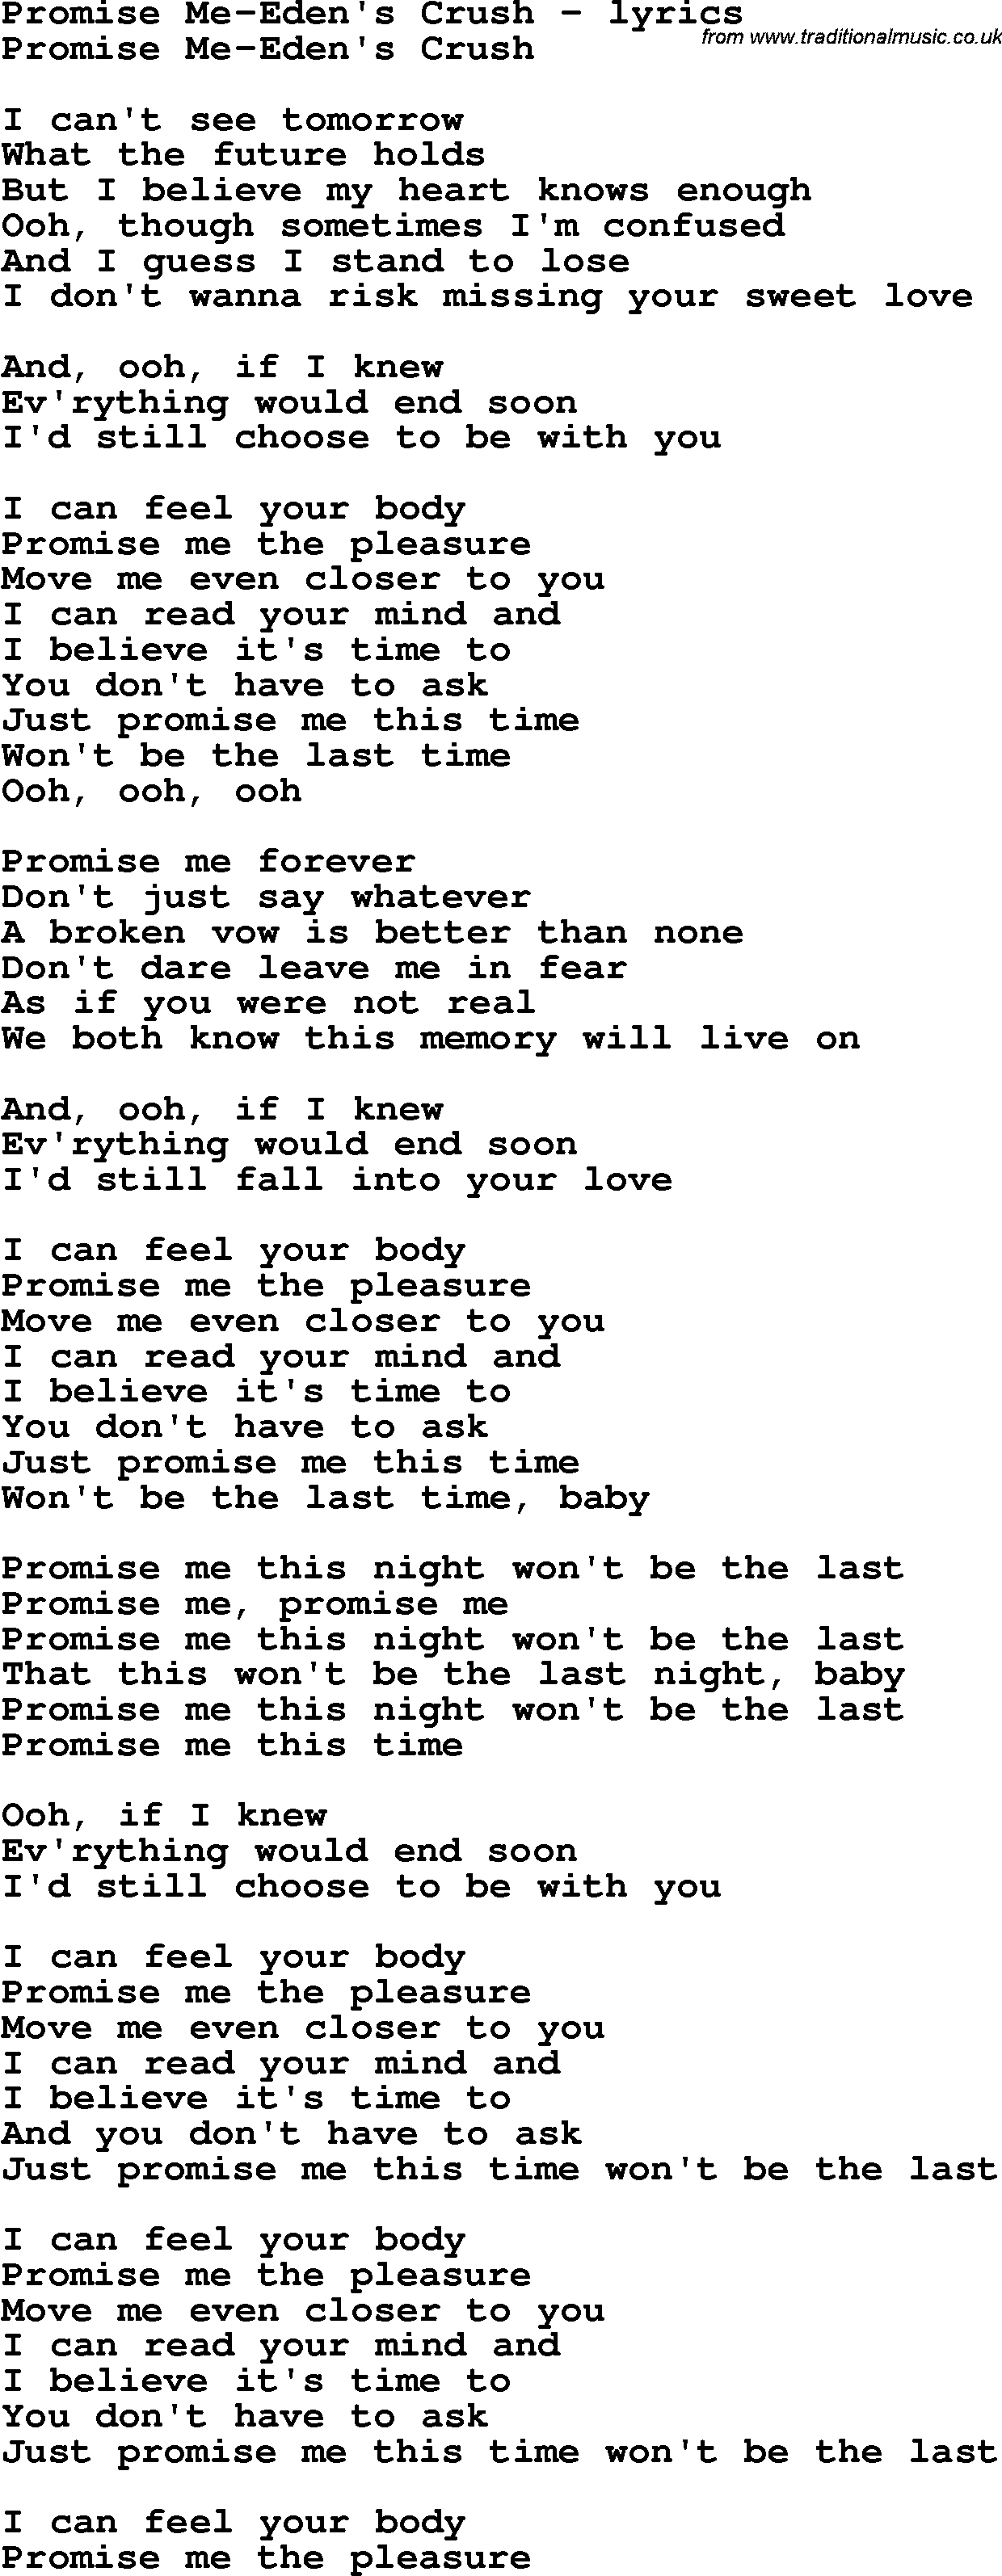 Love Song Lyrics for: Promise Me-Eden's Crush